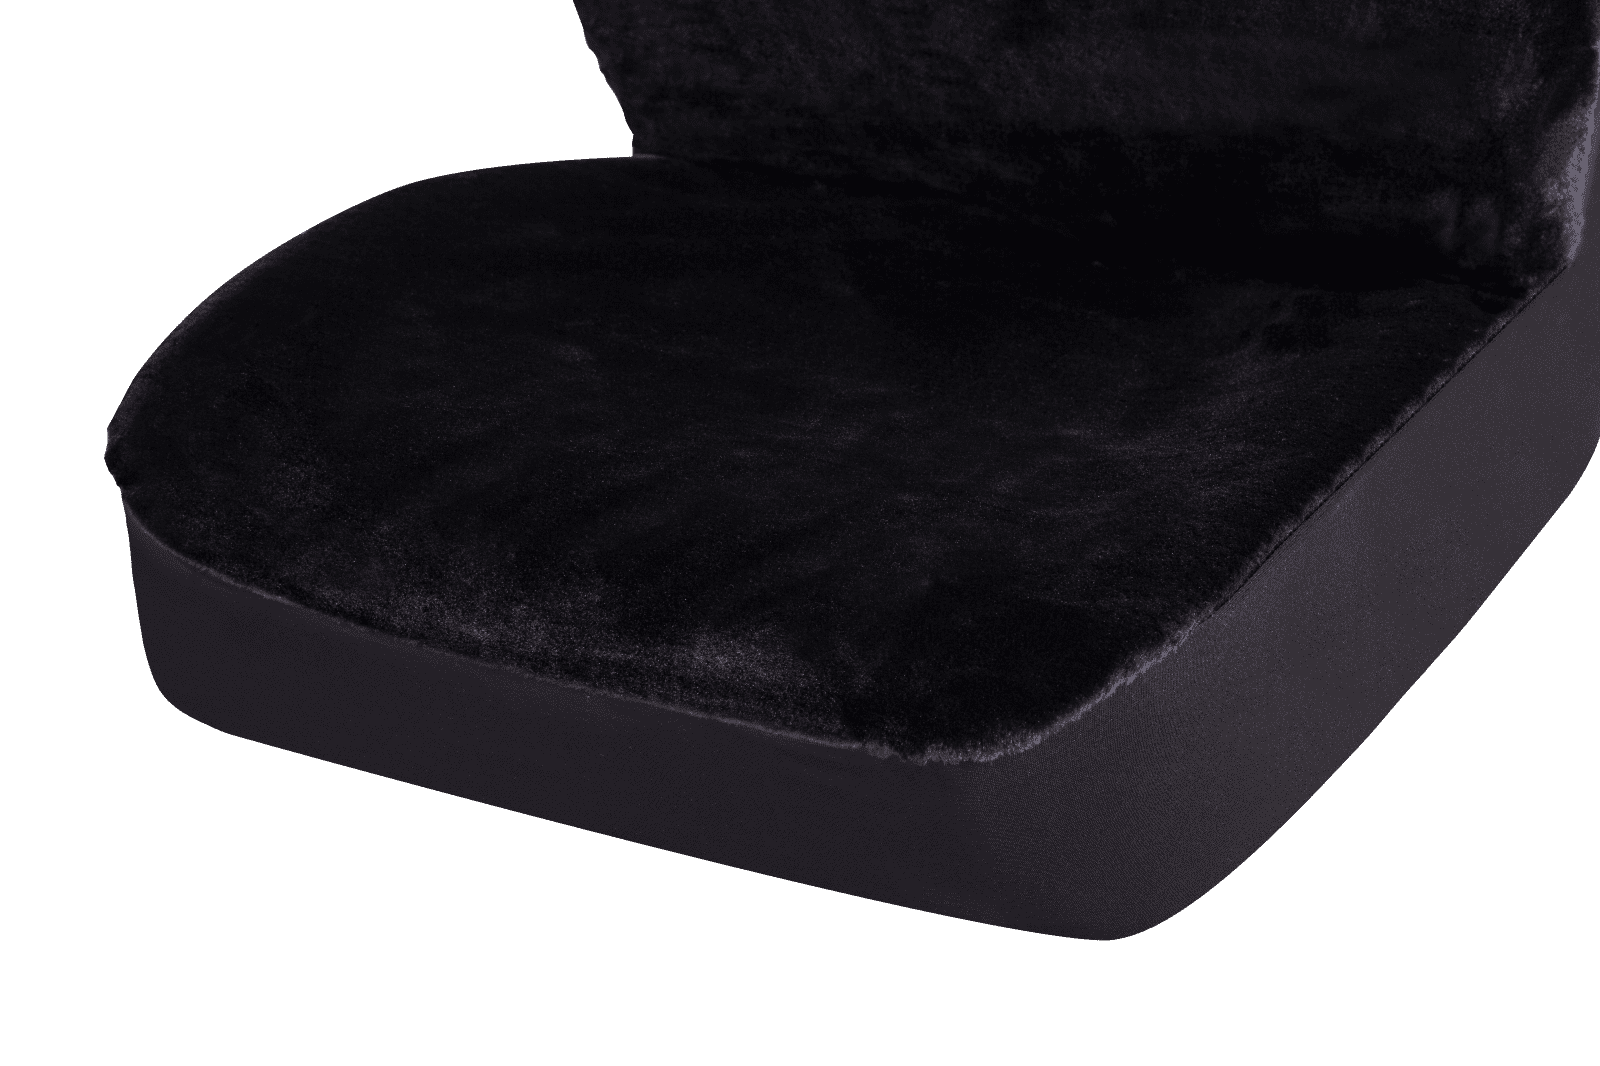 KAWOSEN Faux Fur Warm Car Back Seat Cover Artificial Plush Black Cute Car  Rear Seat Covers Fundas Coche Asiento Universal LFFS02 - AliExpress